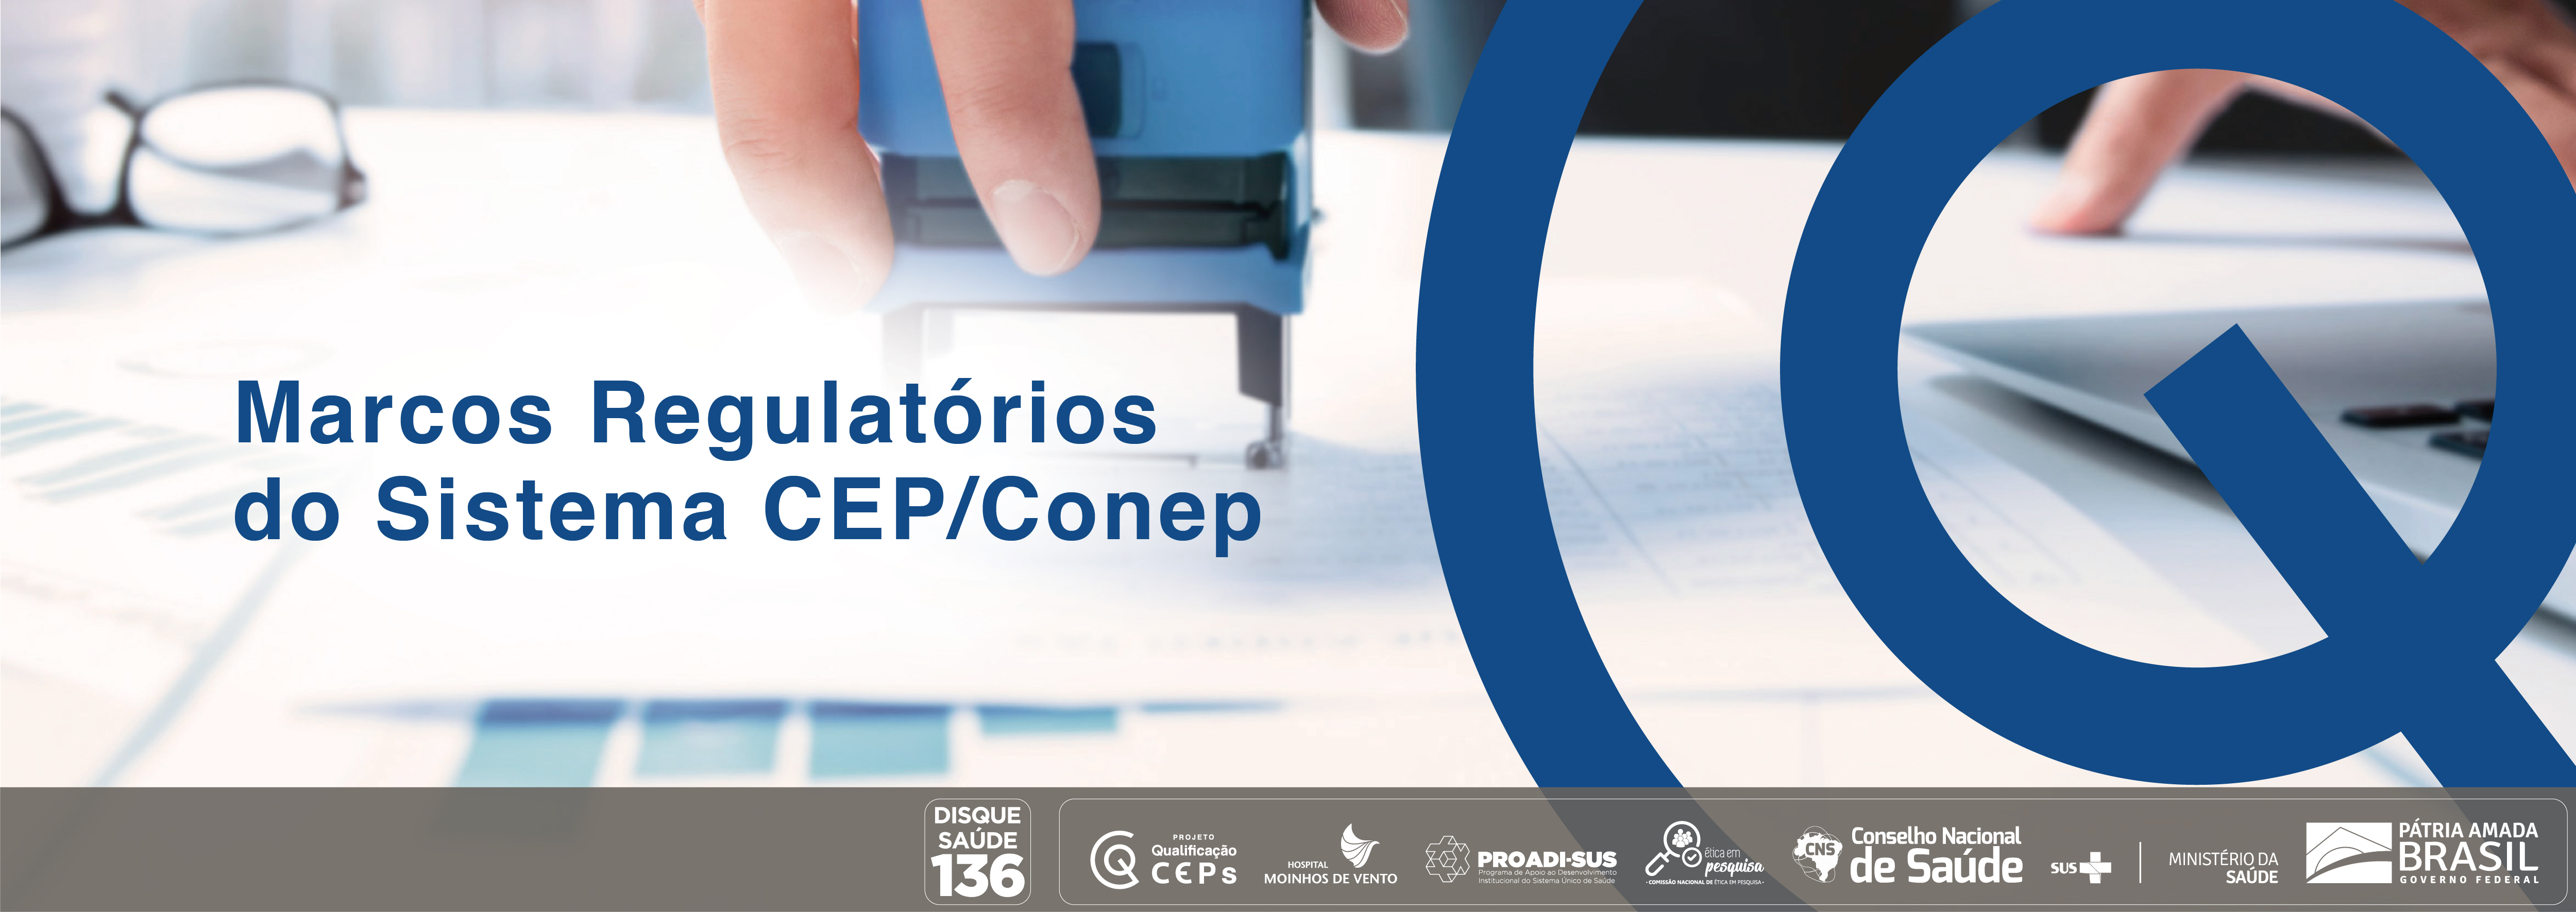 Marcos regulatórios do Sistema CEP/Conep para o processo de análise ética de projetos de pesquisa CEP_MR_01_2020